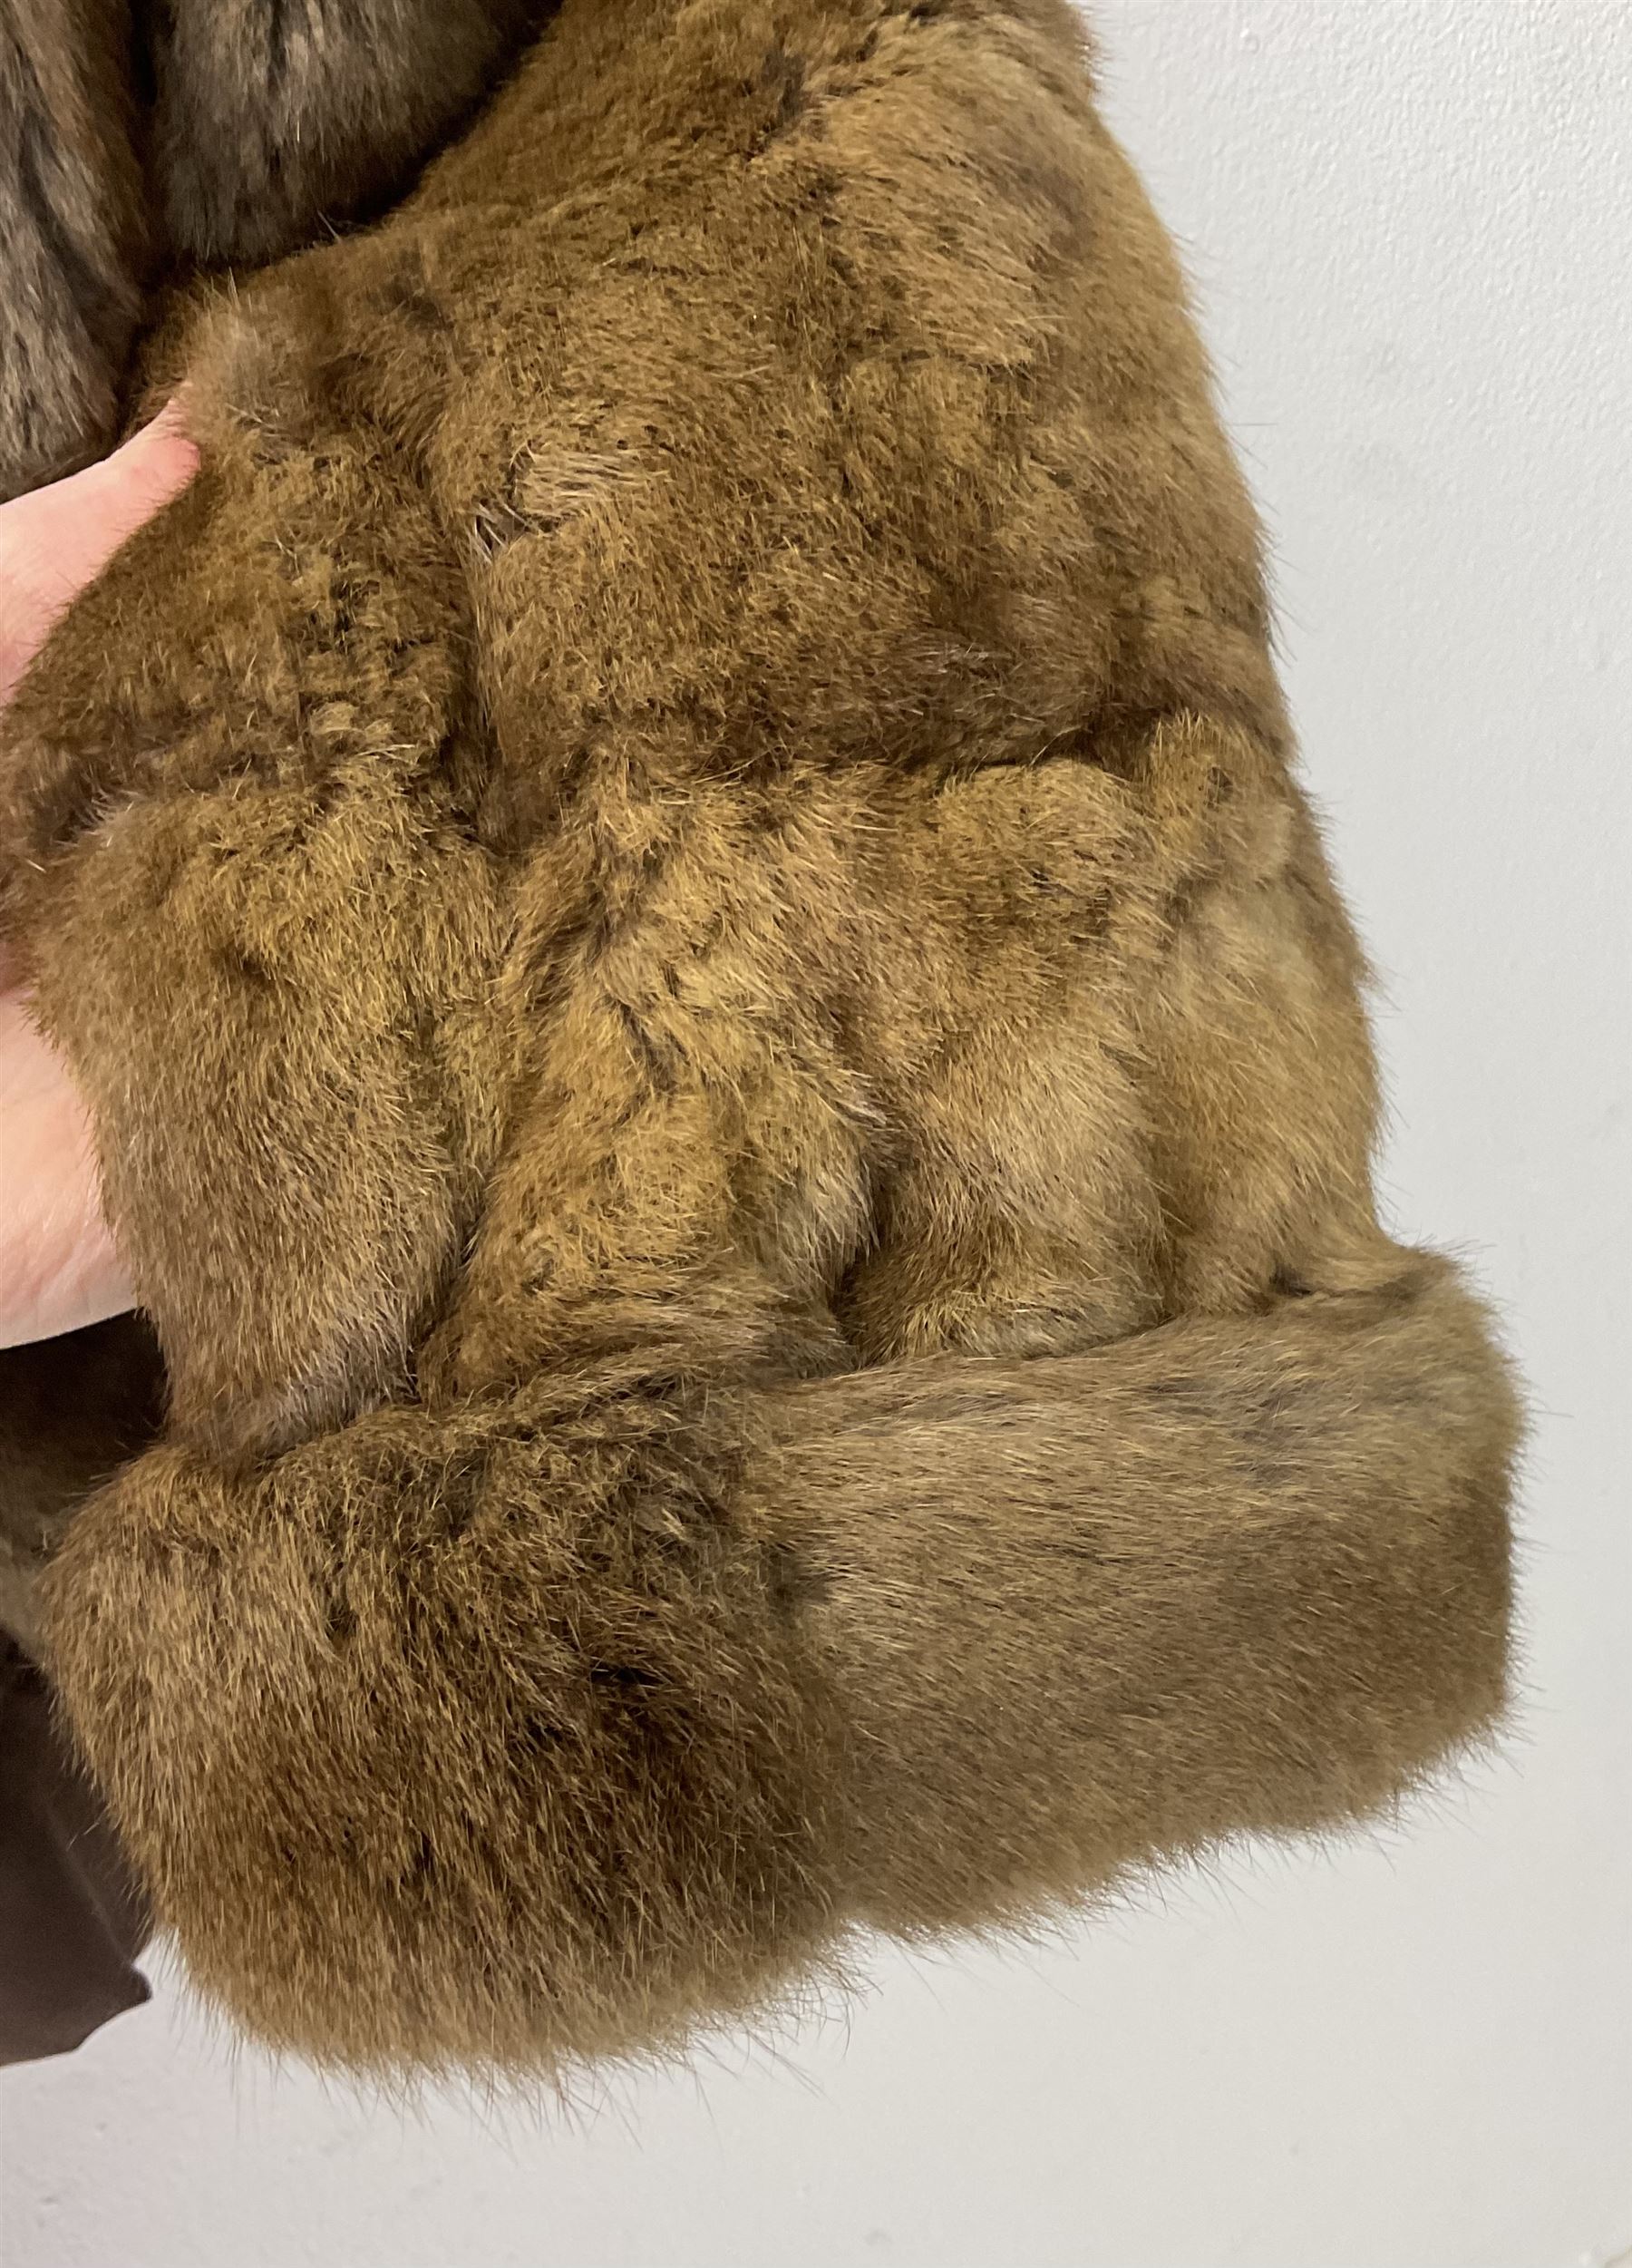 Ladies short rabbit fur jacket - Image 3 of 4